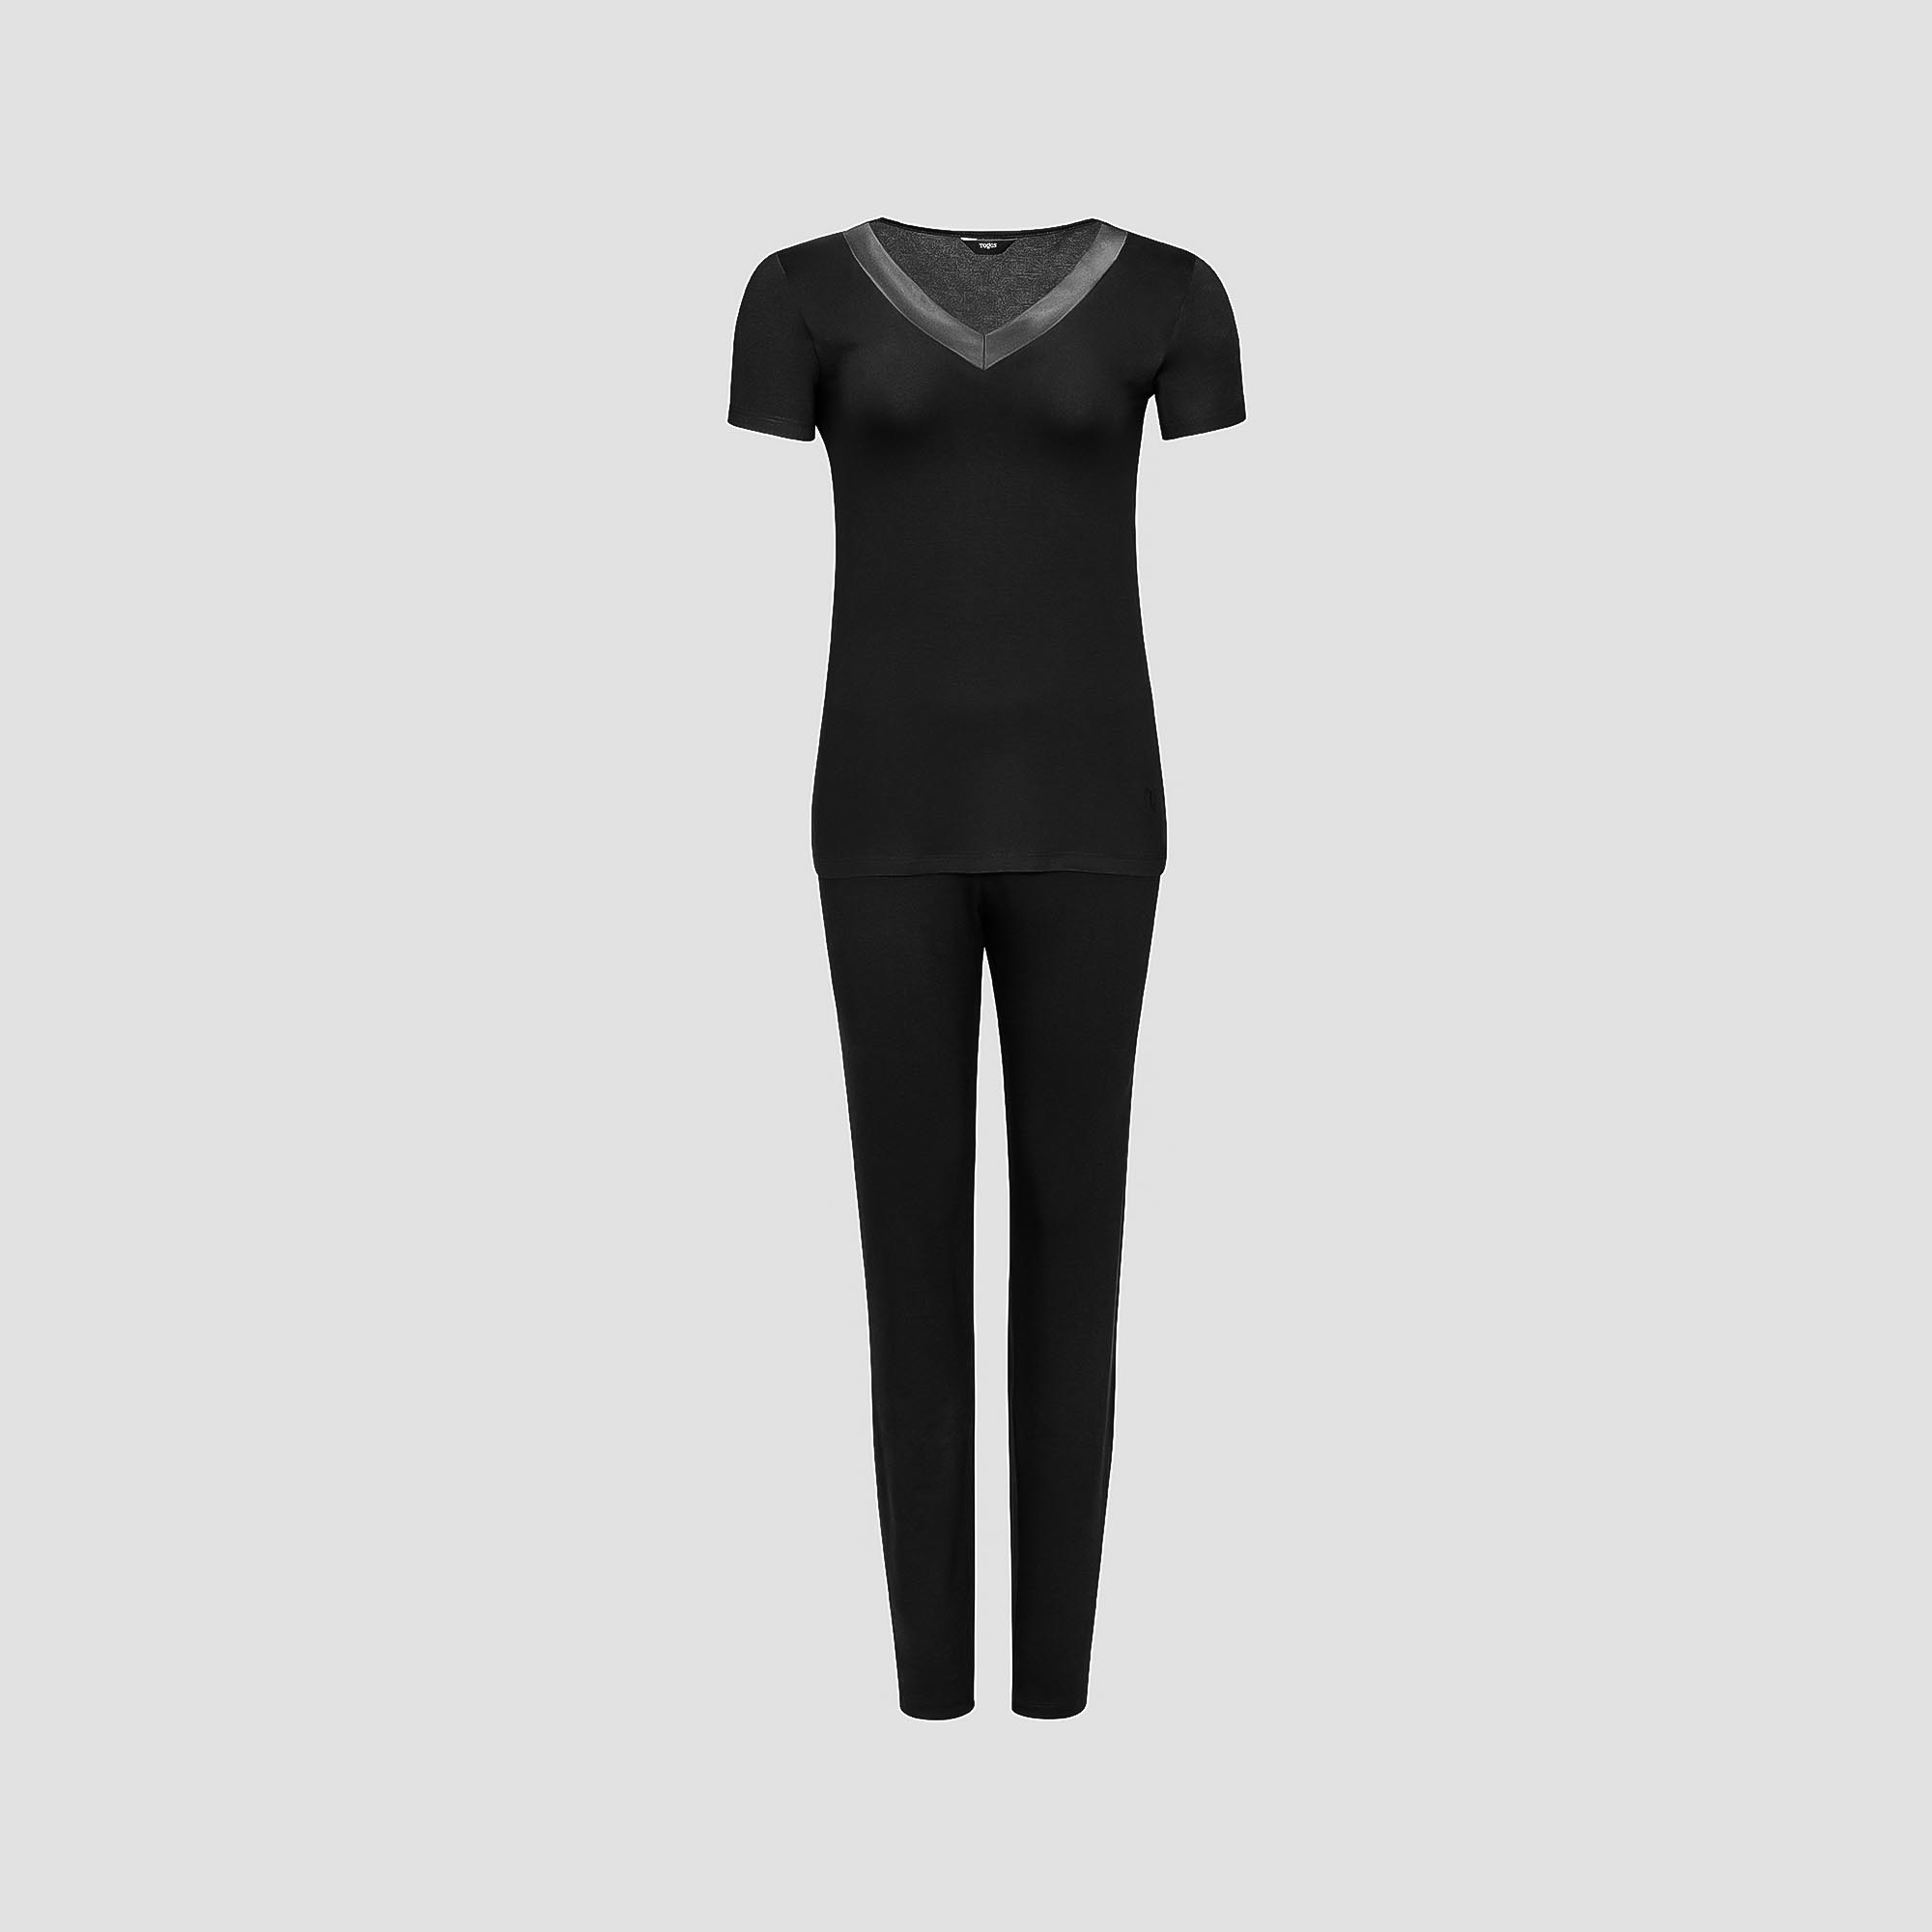 Пижама Togas Ингелла черная женская XXL(52) 2 предмета, размер XXL(52)